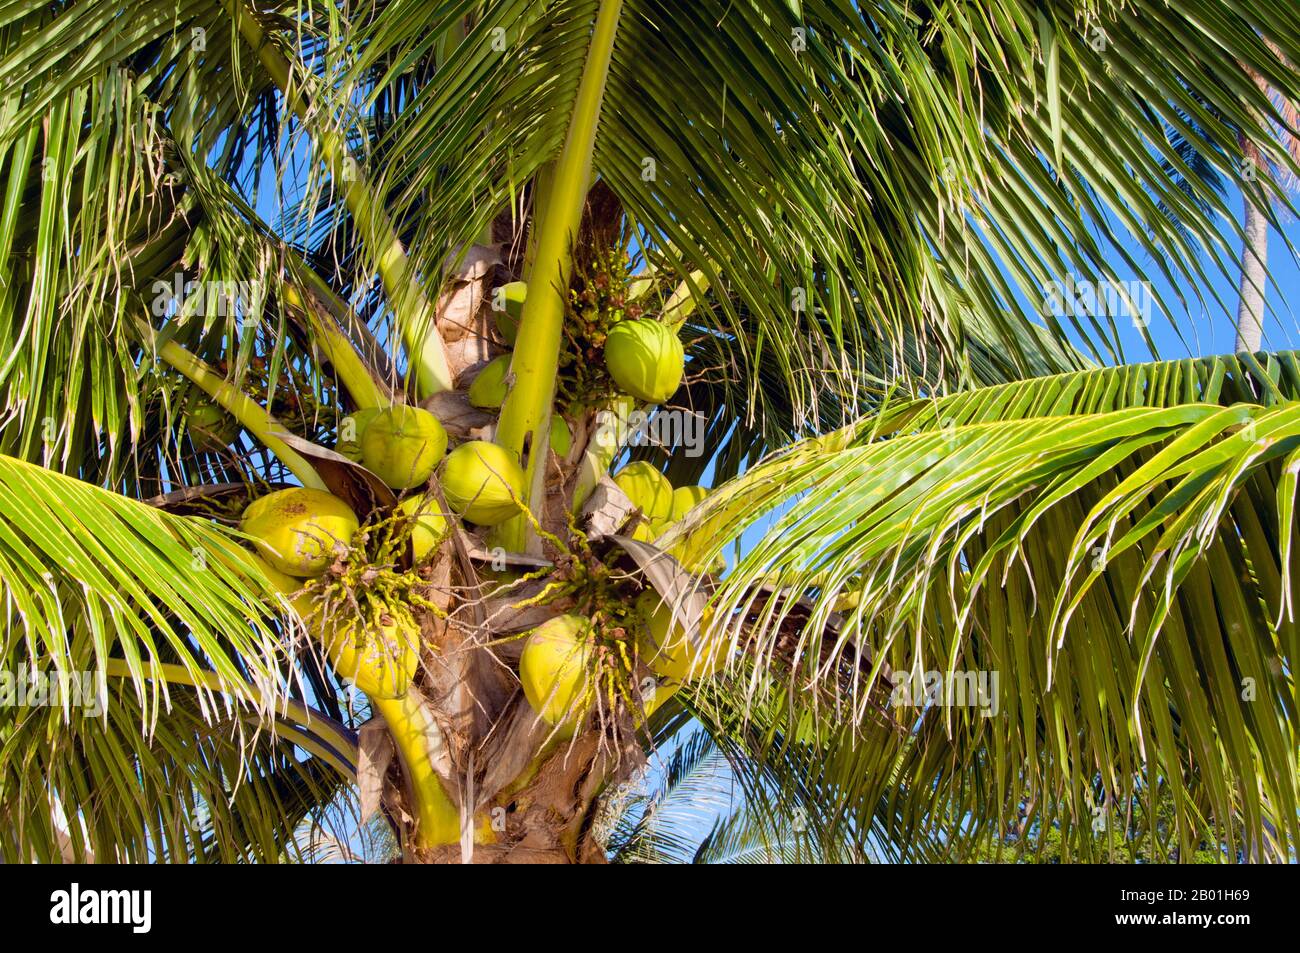 Thailandia: Palme da cocco, Hat Sai Ri, Ko Tao. La palma da cocco, o Cocos nucifera, è apprezzata non solo per la sua bellezza, ma anche come un redditizio raccolto di denaro. Coltivato in tutti i mari del sud e nelle regioni dell'Oceano Indiano, fornisce cibo, bevande, riparo, trasporto, carburante, medicine e persino vestiti per milioni di persone. La palma da cocco vive per circa 60 anni e produce circa 70-80 noci all'anno. Gli alberi sono talvolta alti 40-50 metri (130-160 piedi). Foto Stock